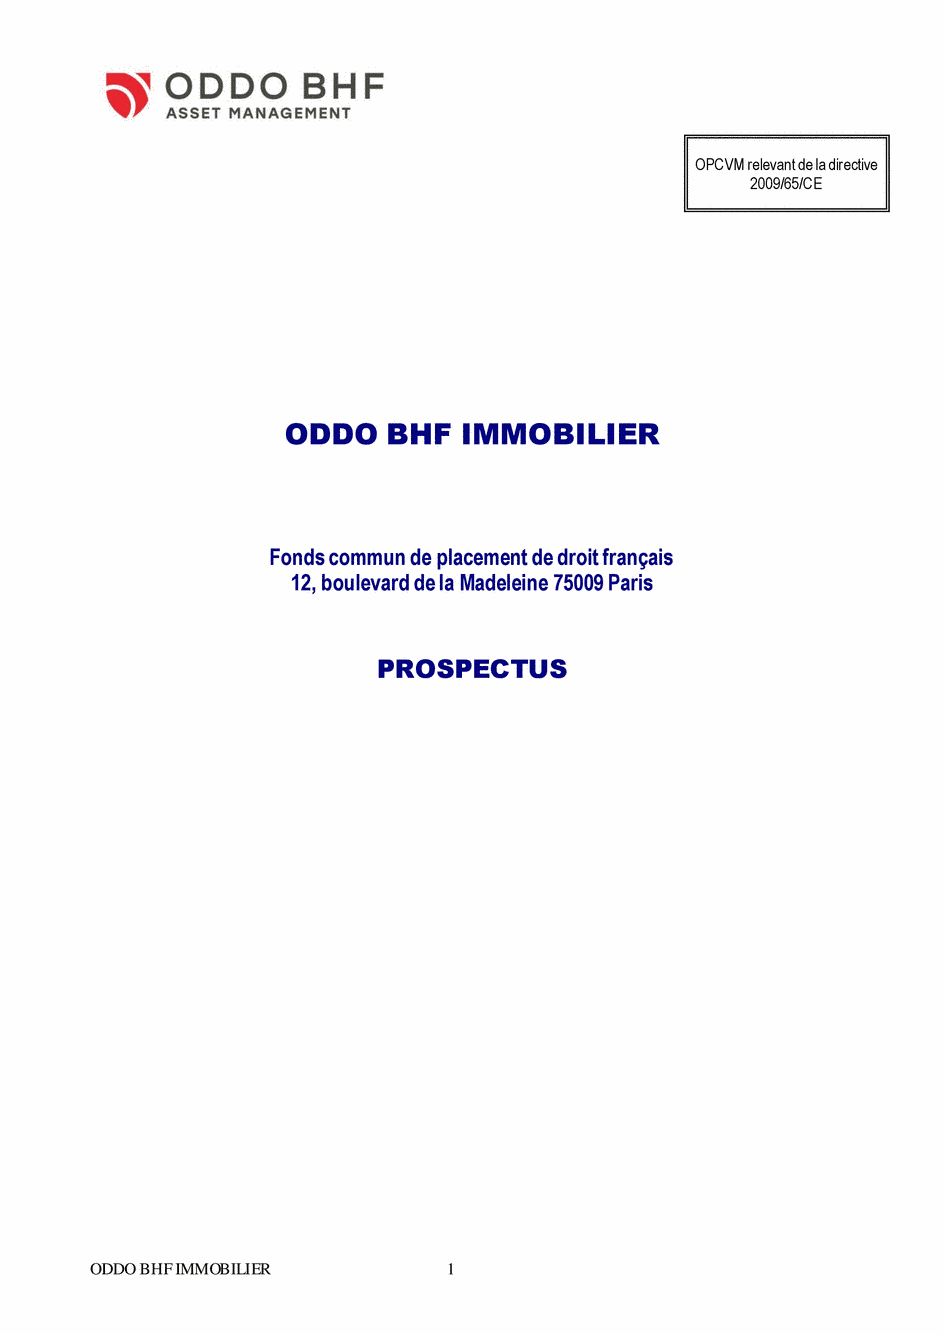 Prospectus ODDO BHF IMMOBILIER CN-EUR - 14/02/2020 - Français